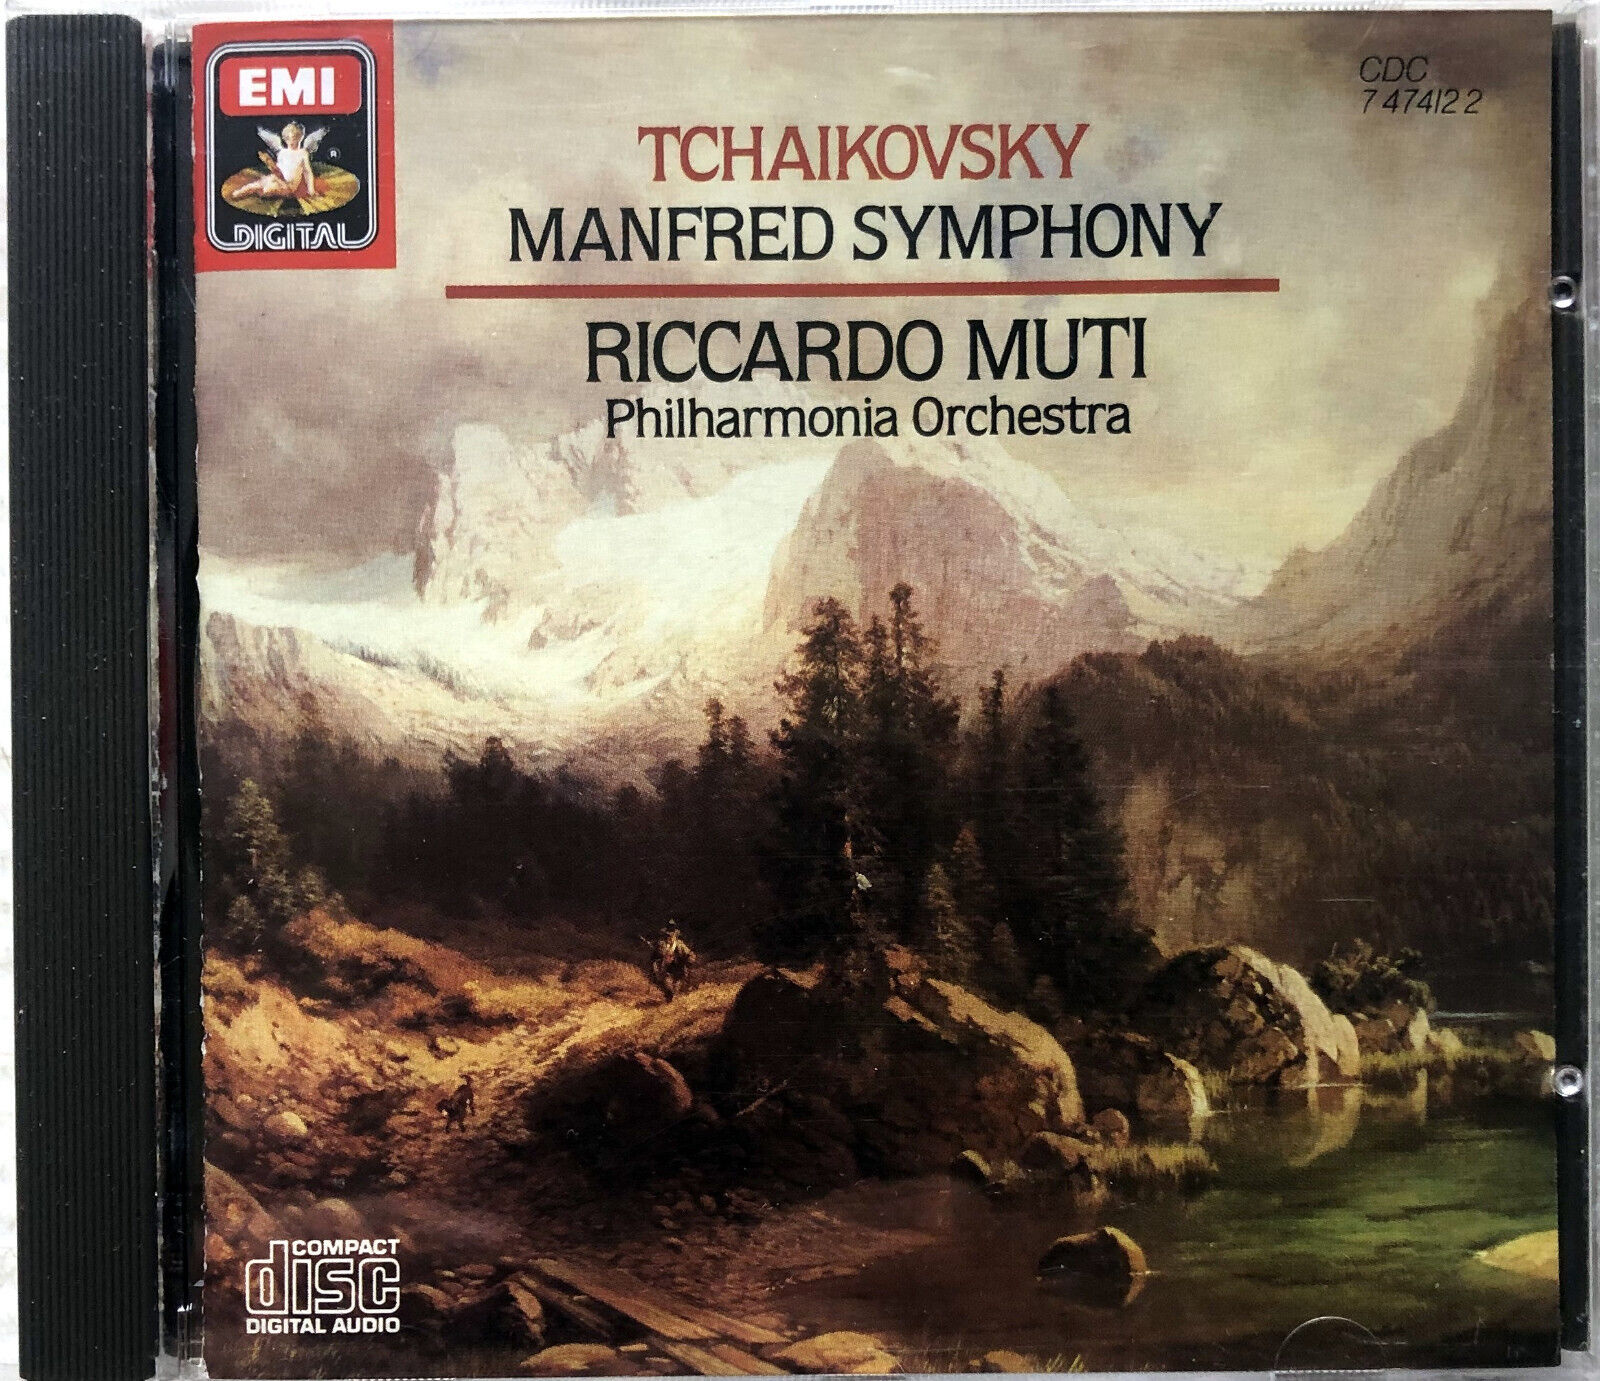 Tchaikovsky: Manfred Symphony by Riccardo Muti (CD, 1982) LIKE NEW